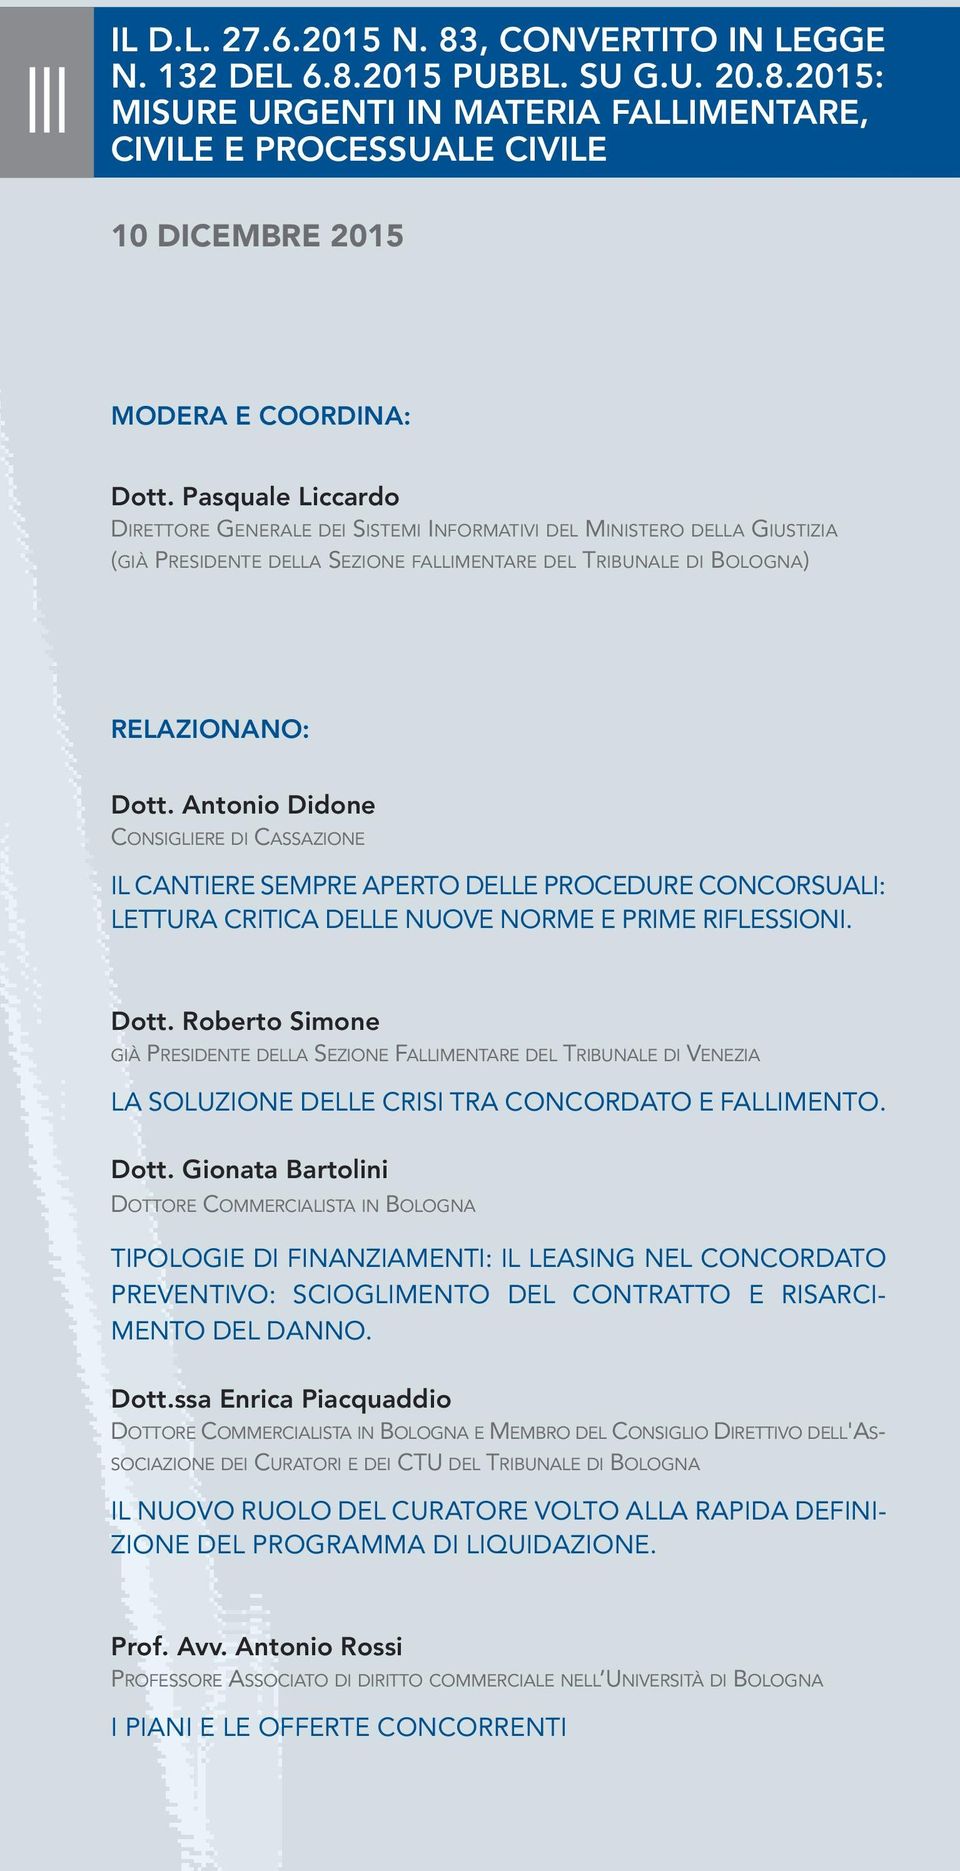 Antonio Didone CONSIGLIERE DI CASSAZIONE IL CANTIERE SEMPRE APERTO DELLE PROCEDURE CONCORSUALI: LETTURA CRITICA DELLE NUOVE NORME E PRIME RIFLESSIONI. Dott.